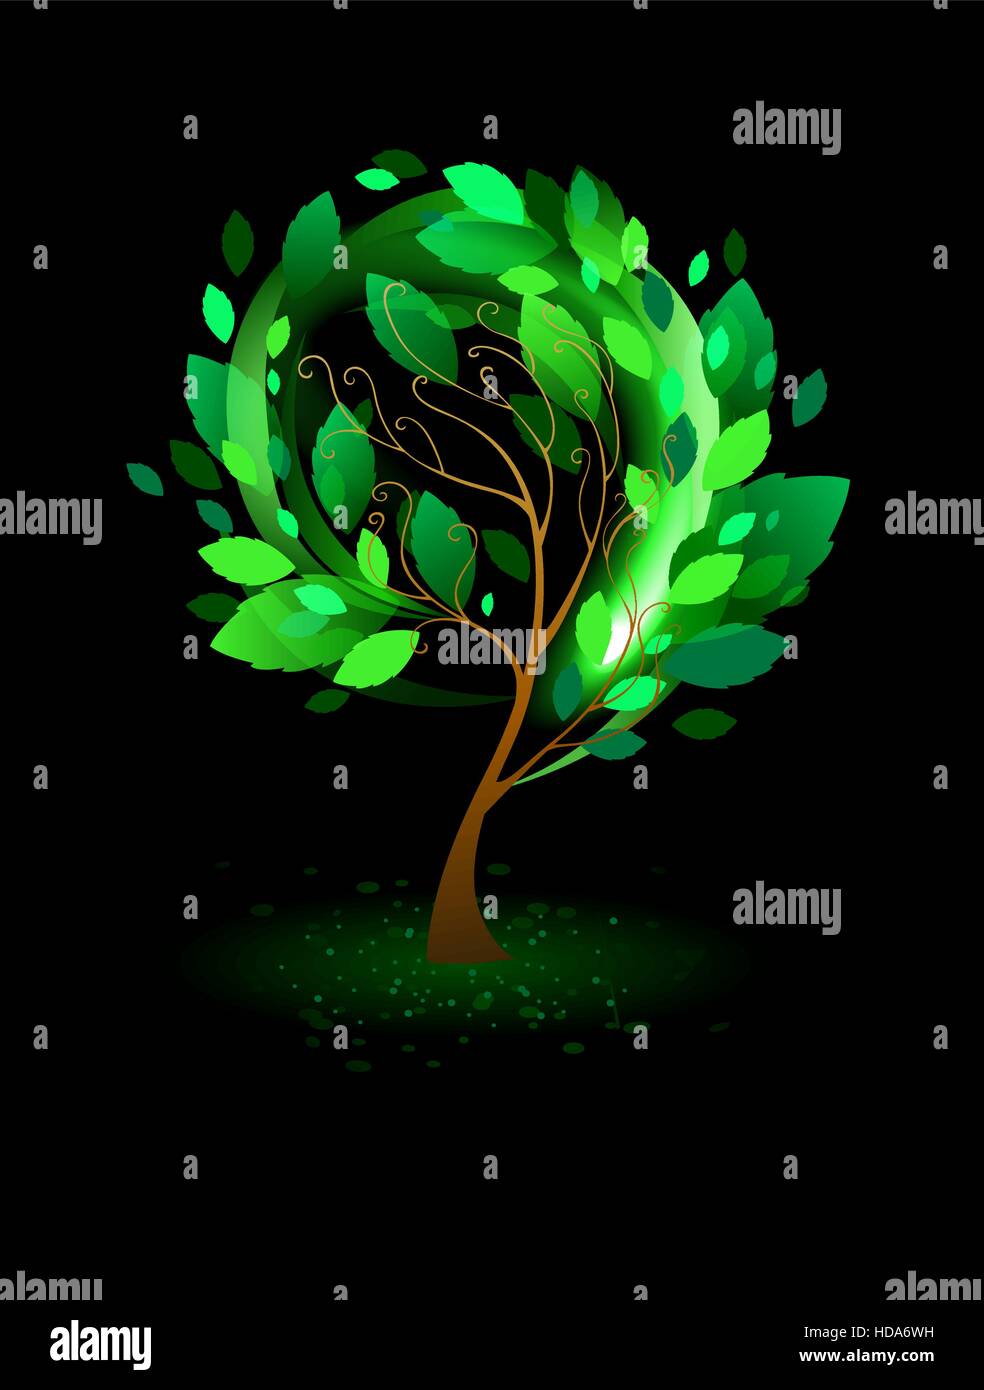 Baum mit grünen Blättern auf einem schwarzen Hintergrund Stock Vektor